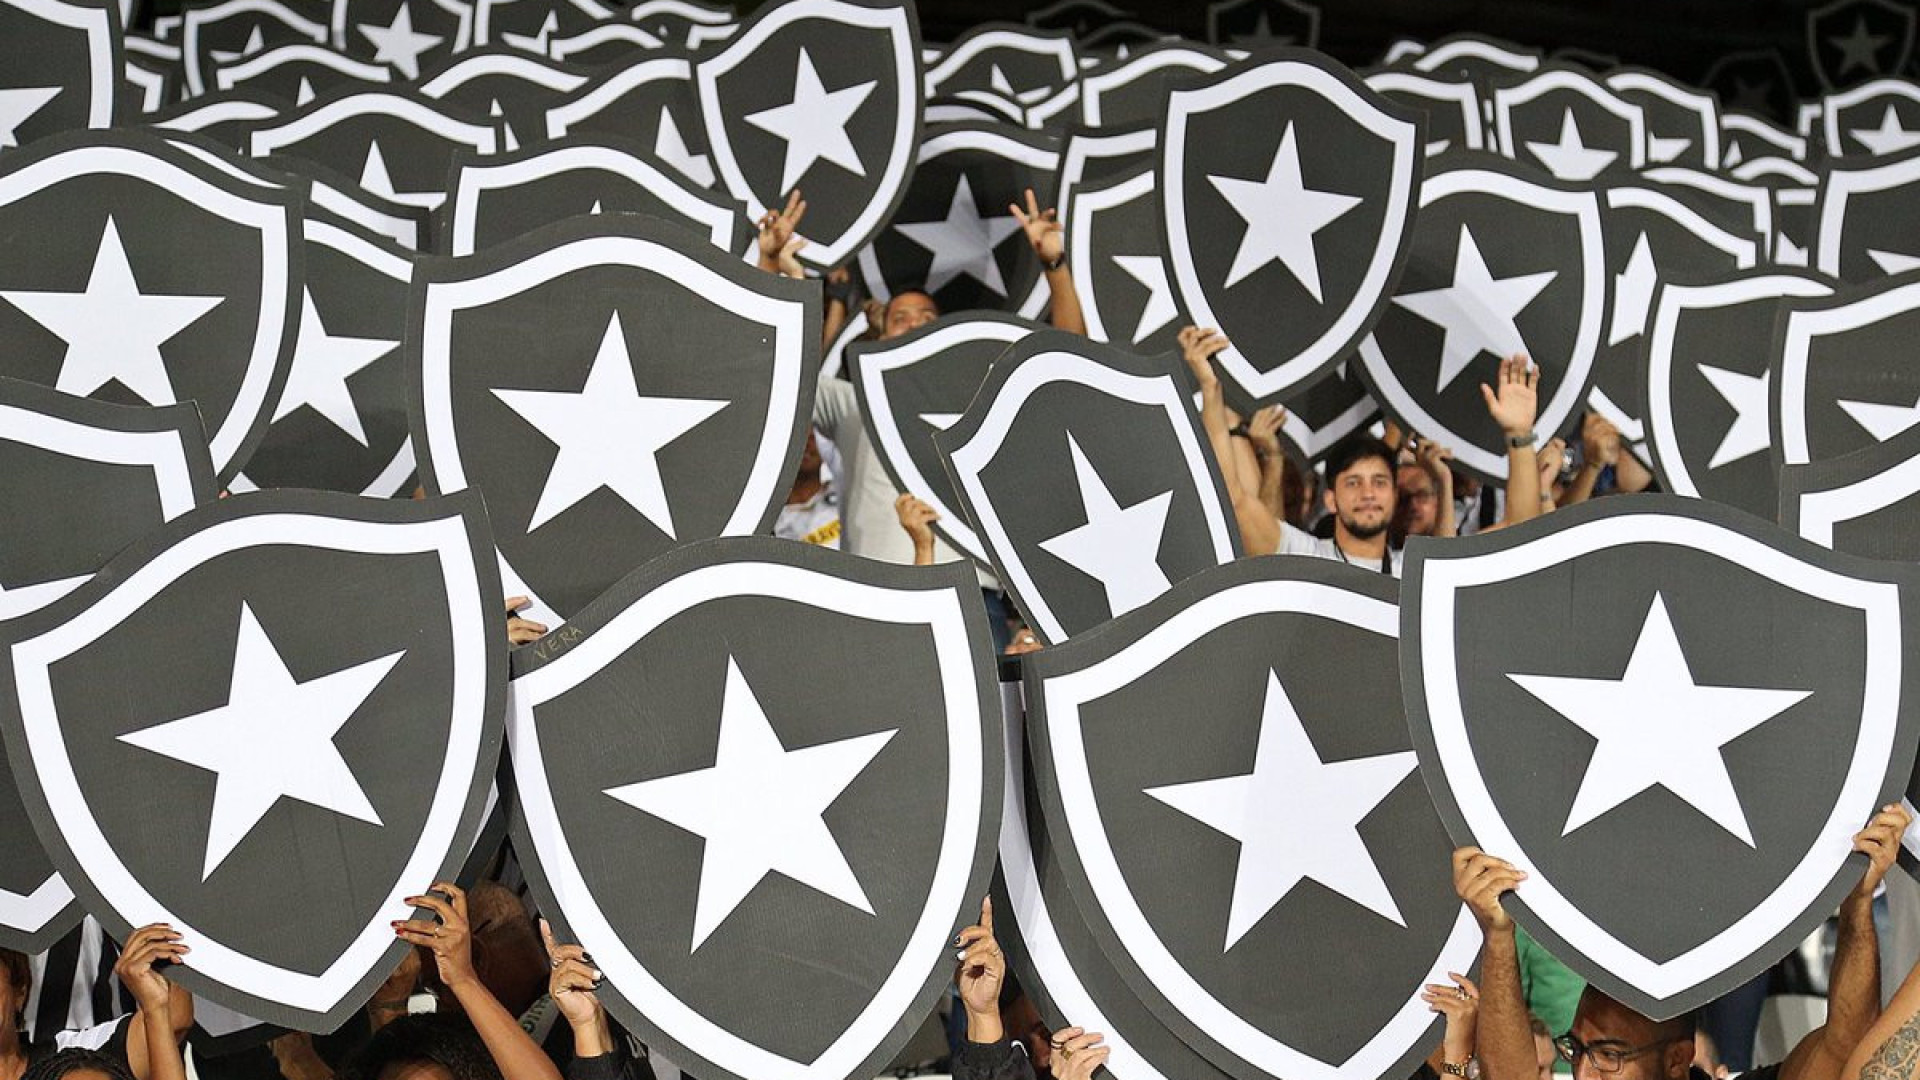 Textor vê crise na CBF como oportunidade e diz que Botafogo não votará 'em bloco' nas eleições